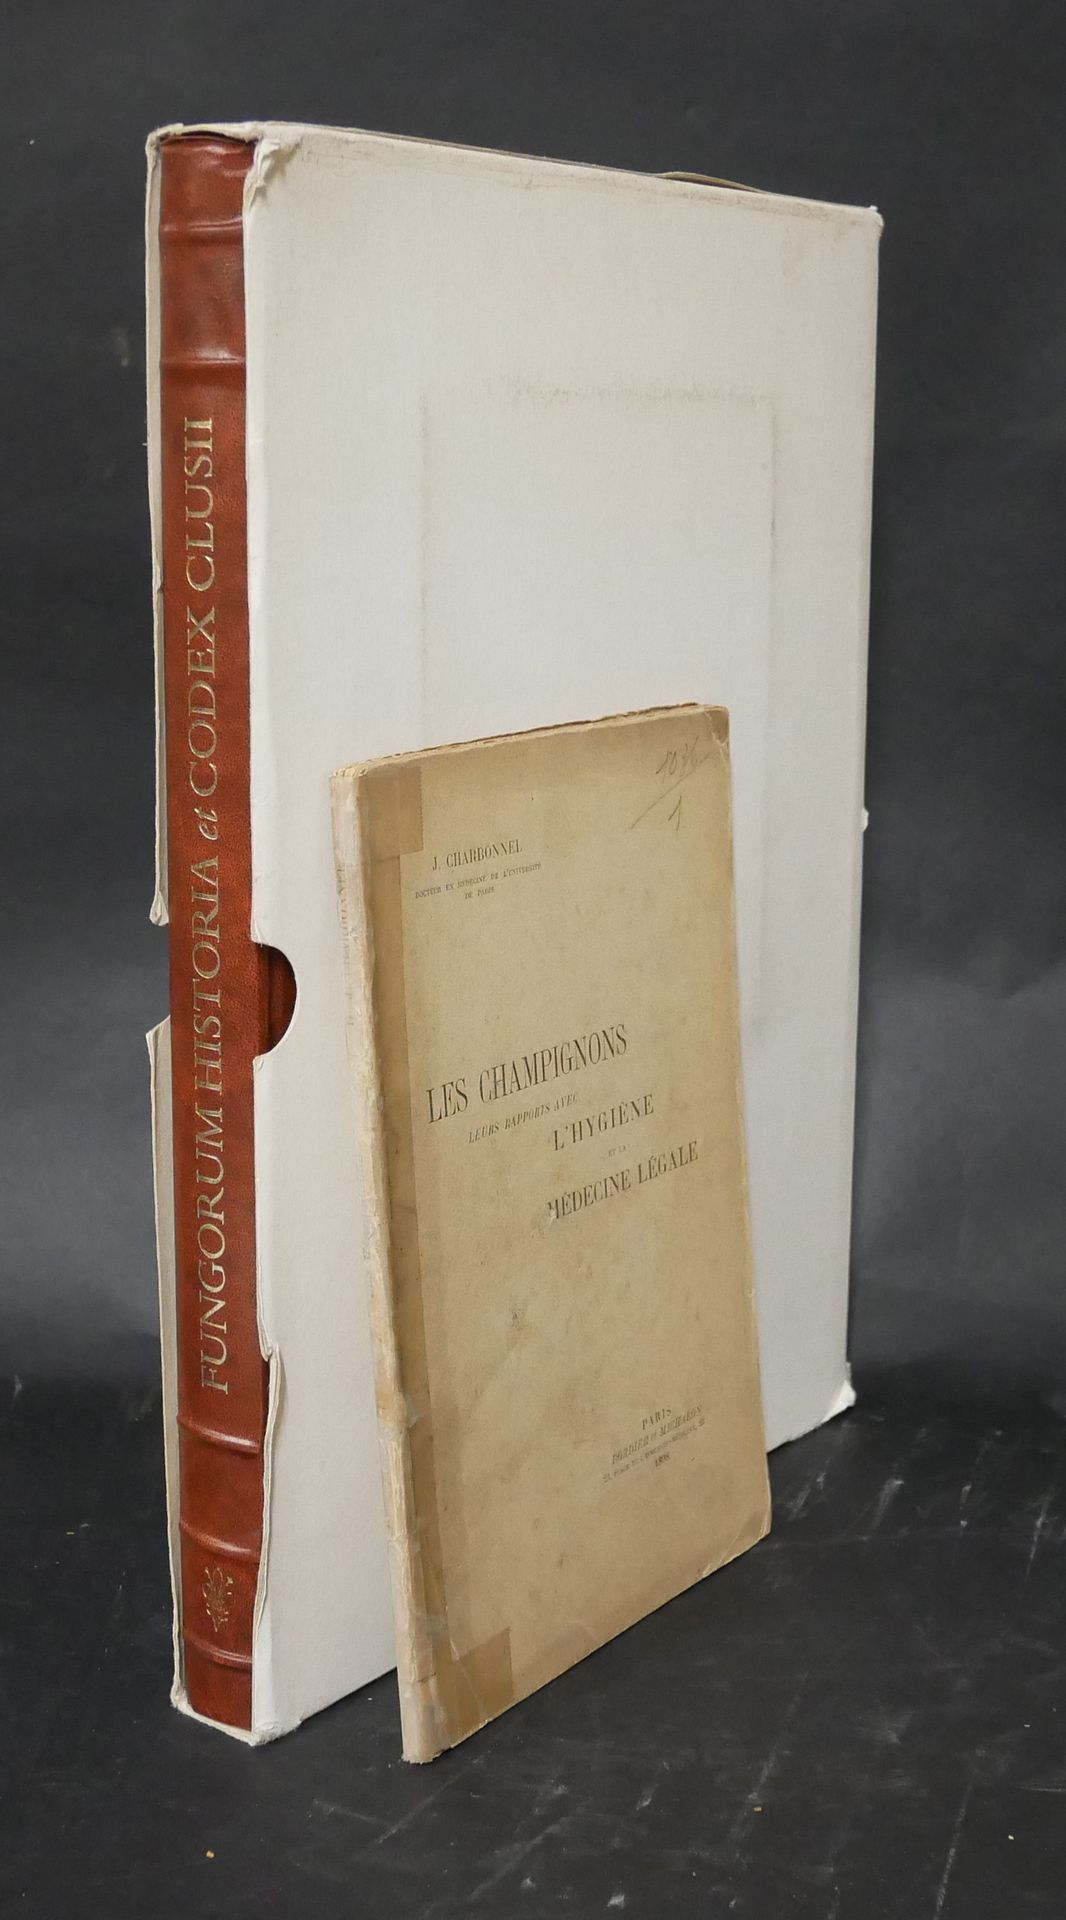 Null .Jean CHARBONNEL Les champignons.它们与卫生和法律医学的关系。87页。Bordier-Michalon,1898。

&hellip;